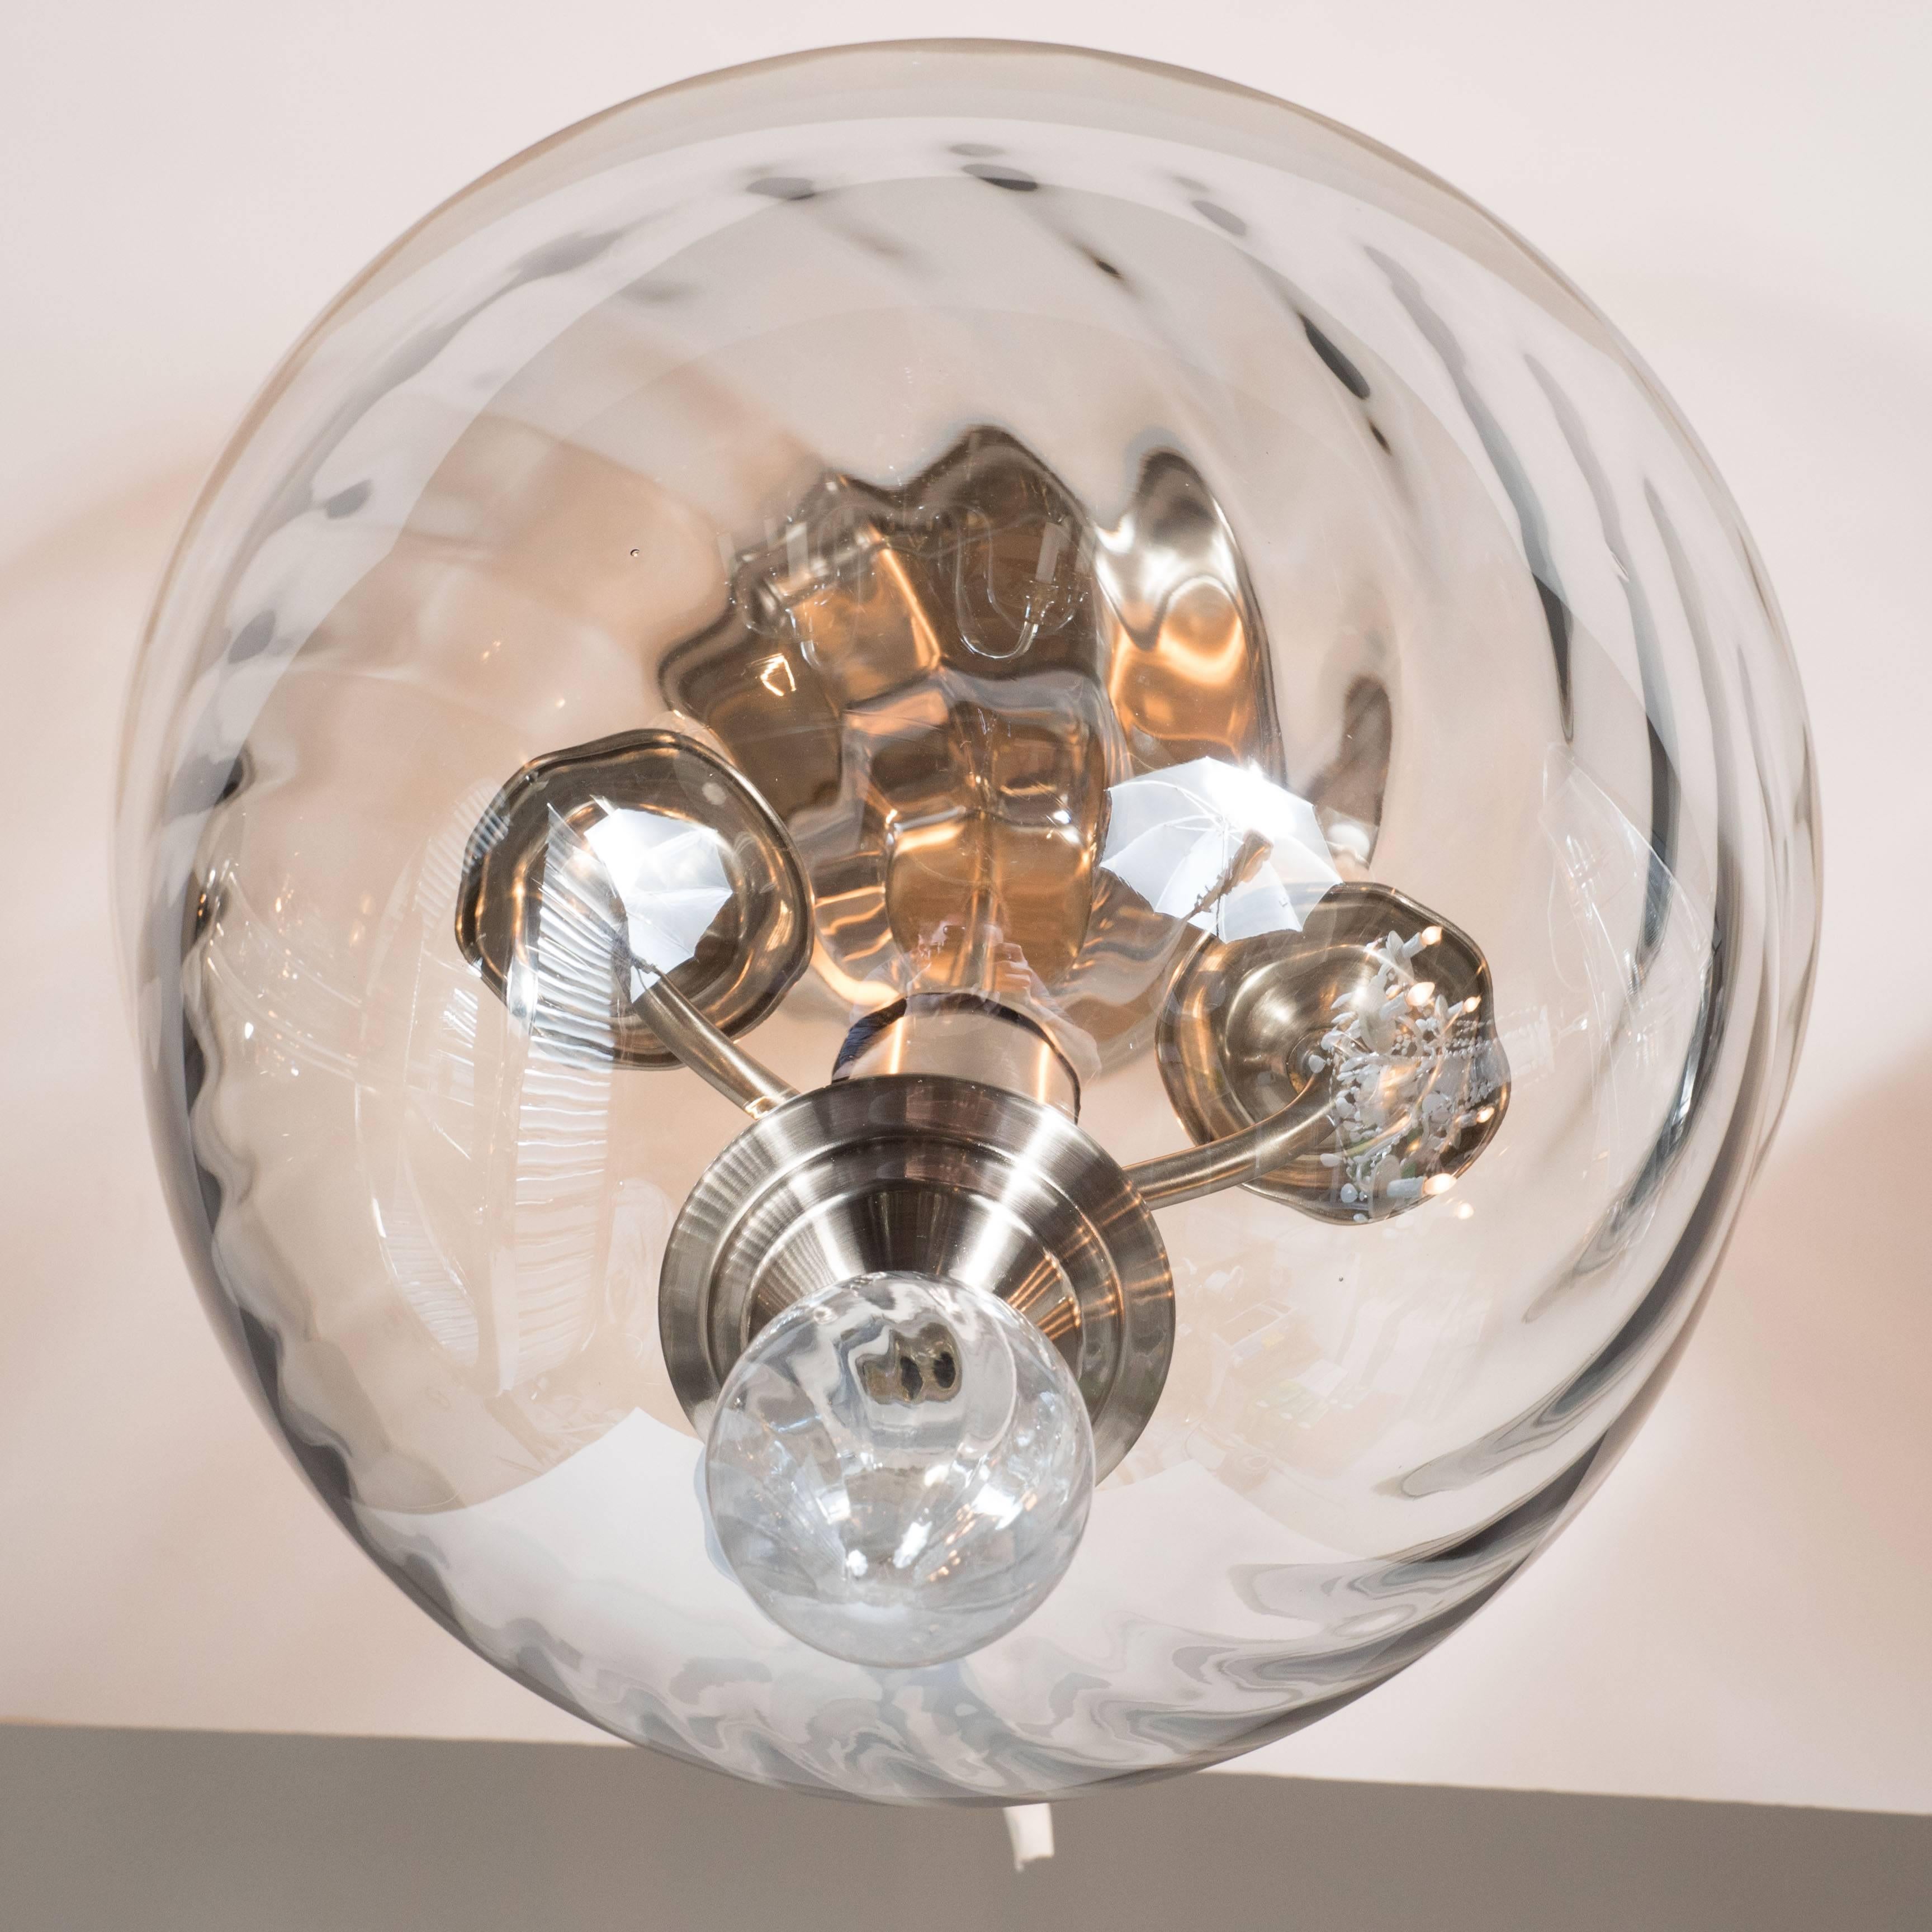 Lustre à encastrer en verre de Murano soufflé à la main, de style moderne du milieu du siècle, avec un dôme inversé et des détails tourbillonnants. Les raccords en nickel, ainsi que l'embout de verre en forme de goutte, complètent la pièce.